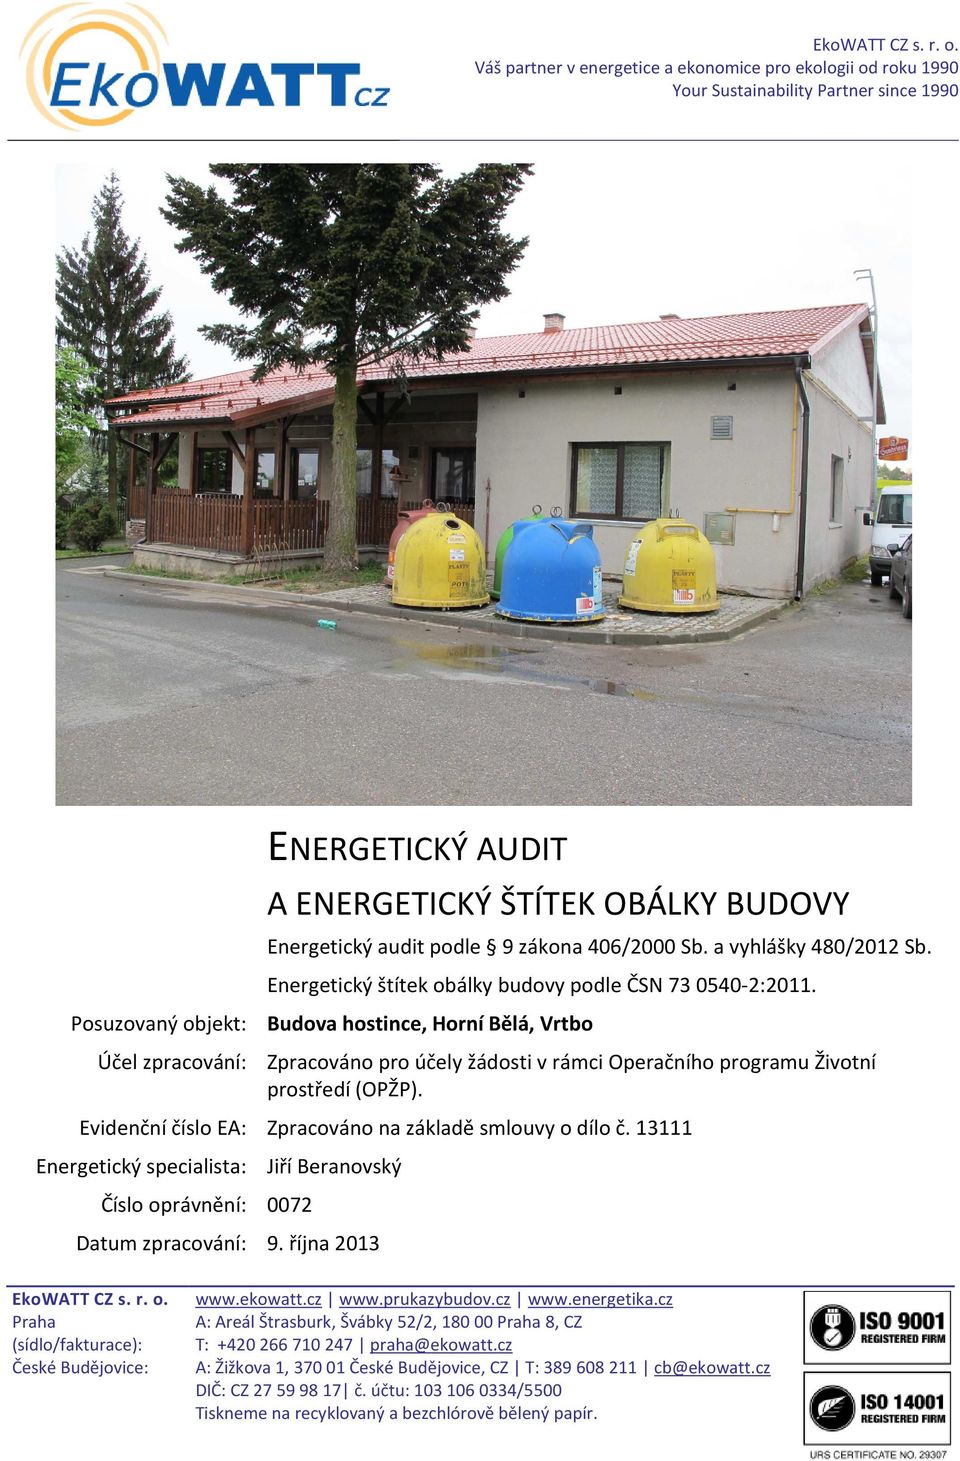 a vyhlášky 480/2012 Sb. Energetický štítek obálky budovy podle ČSN 73 0540-2:2011.